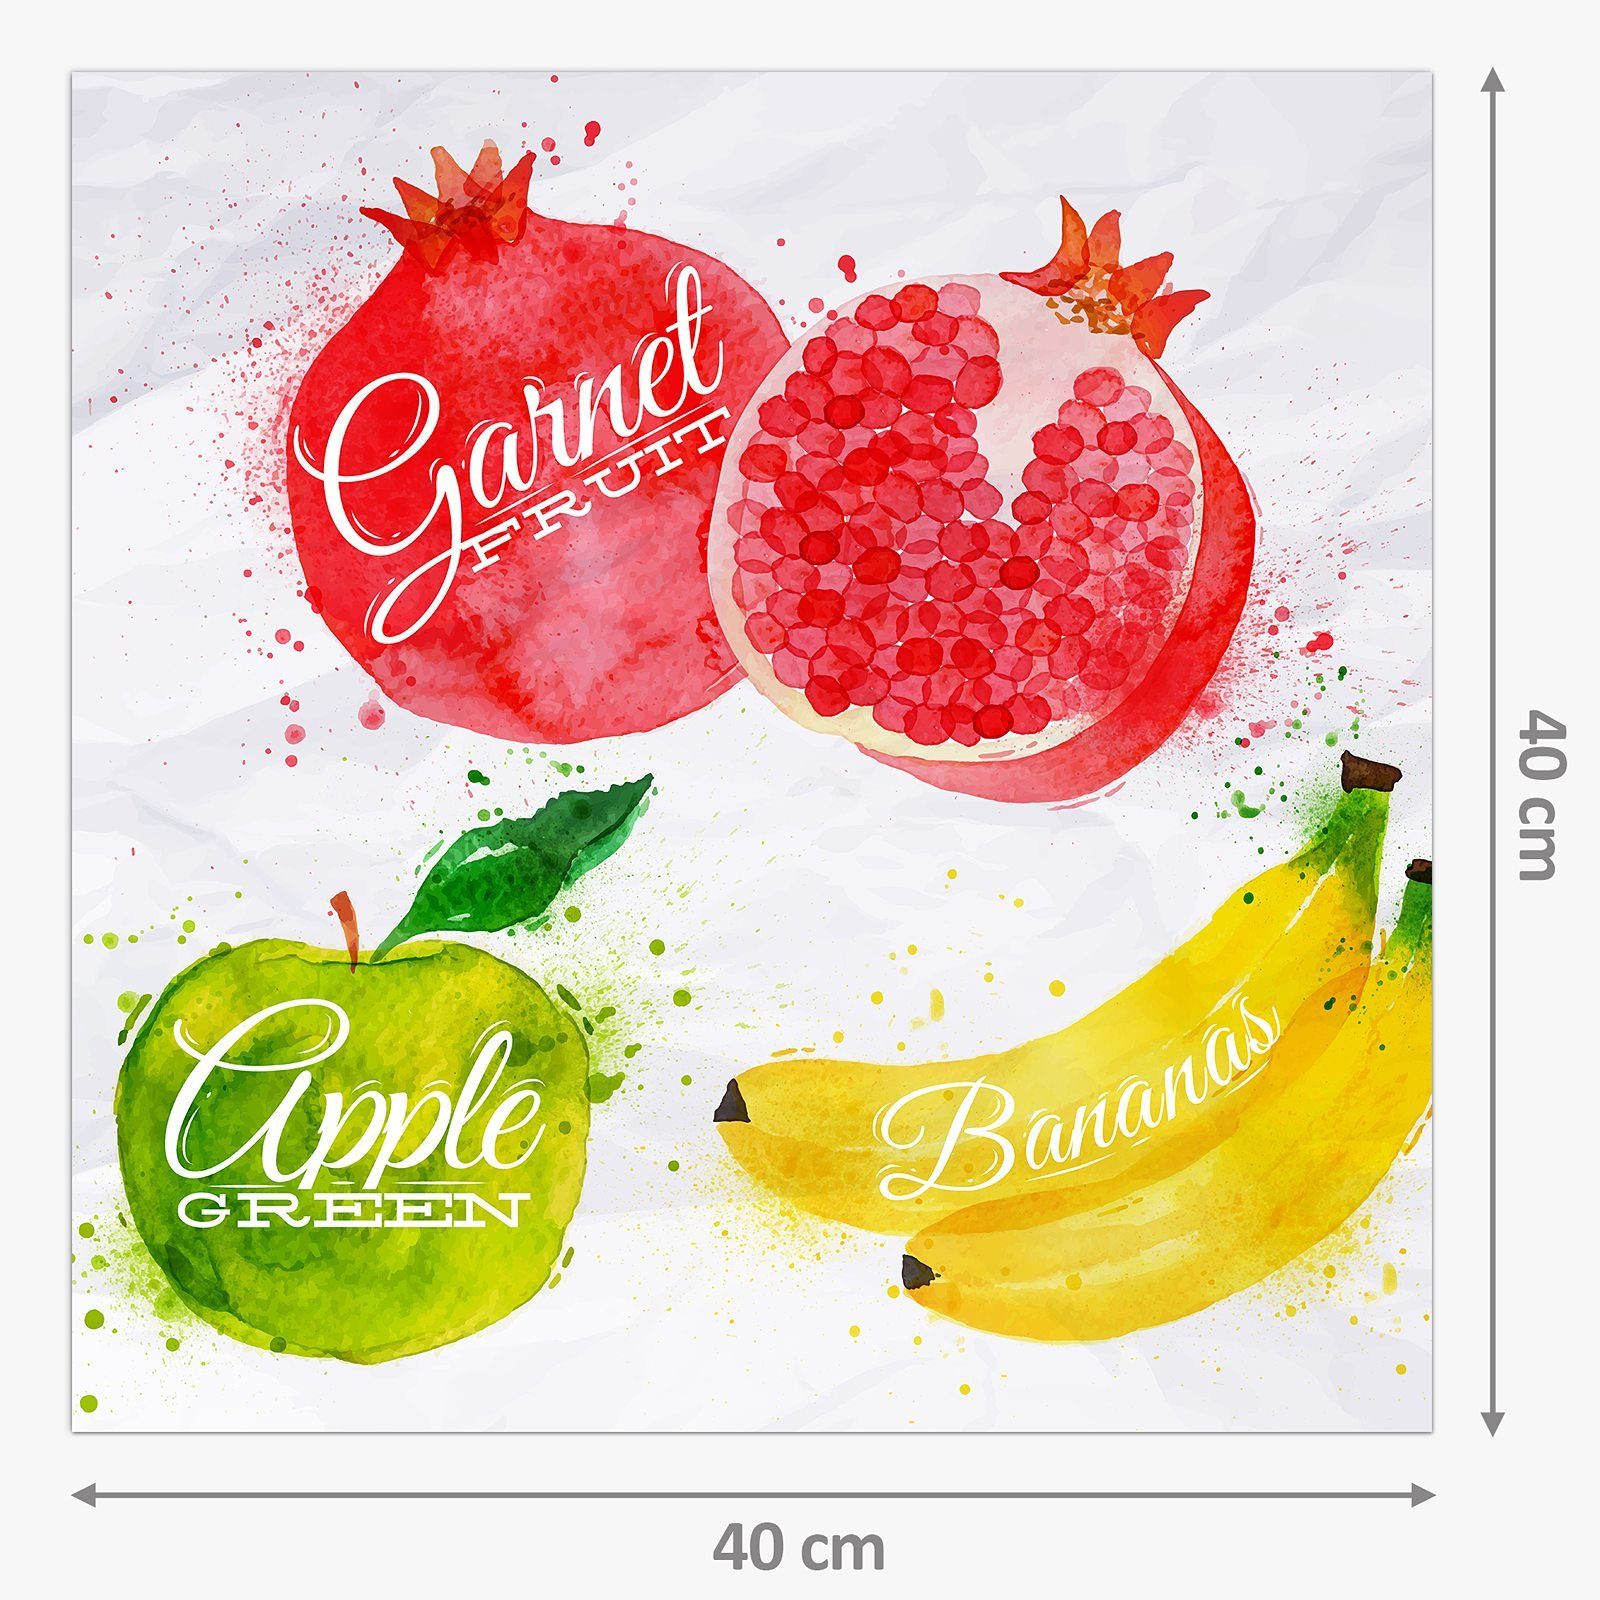 Küchenrückwand Küchenrückwand Illustration Motiv mit Spritzschutz Primedeco Glas Früchte